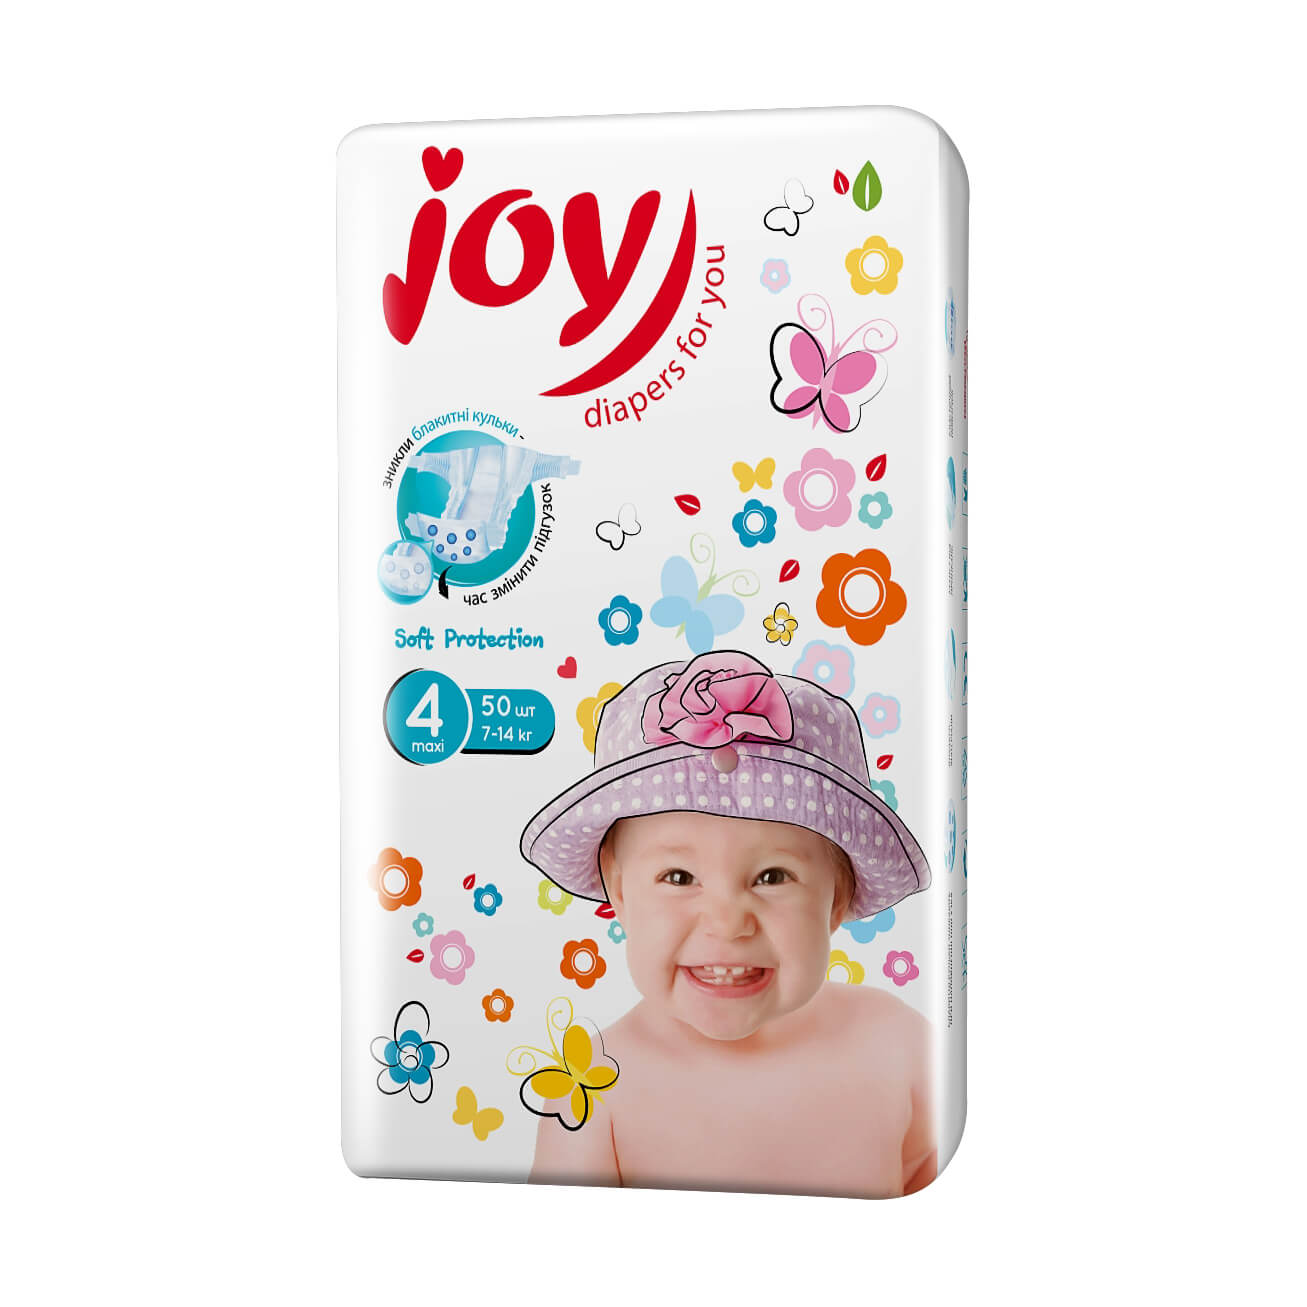 Подгузники Joy Soft Protection размер 4 (7-14 кг), 50 шт  